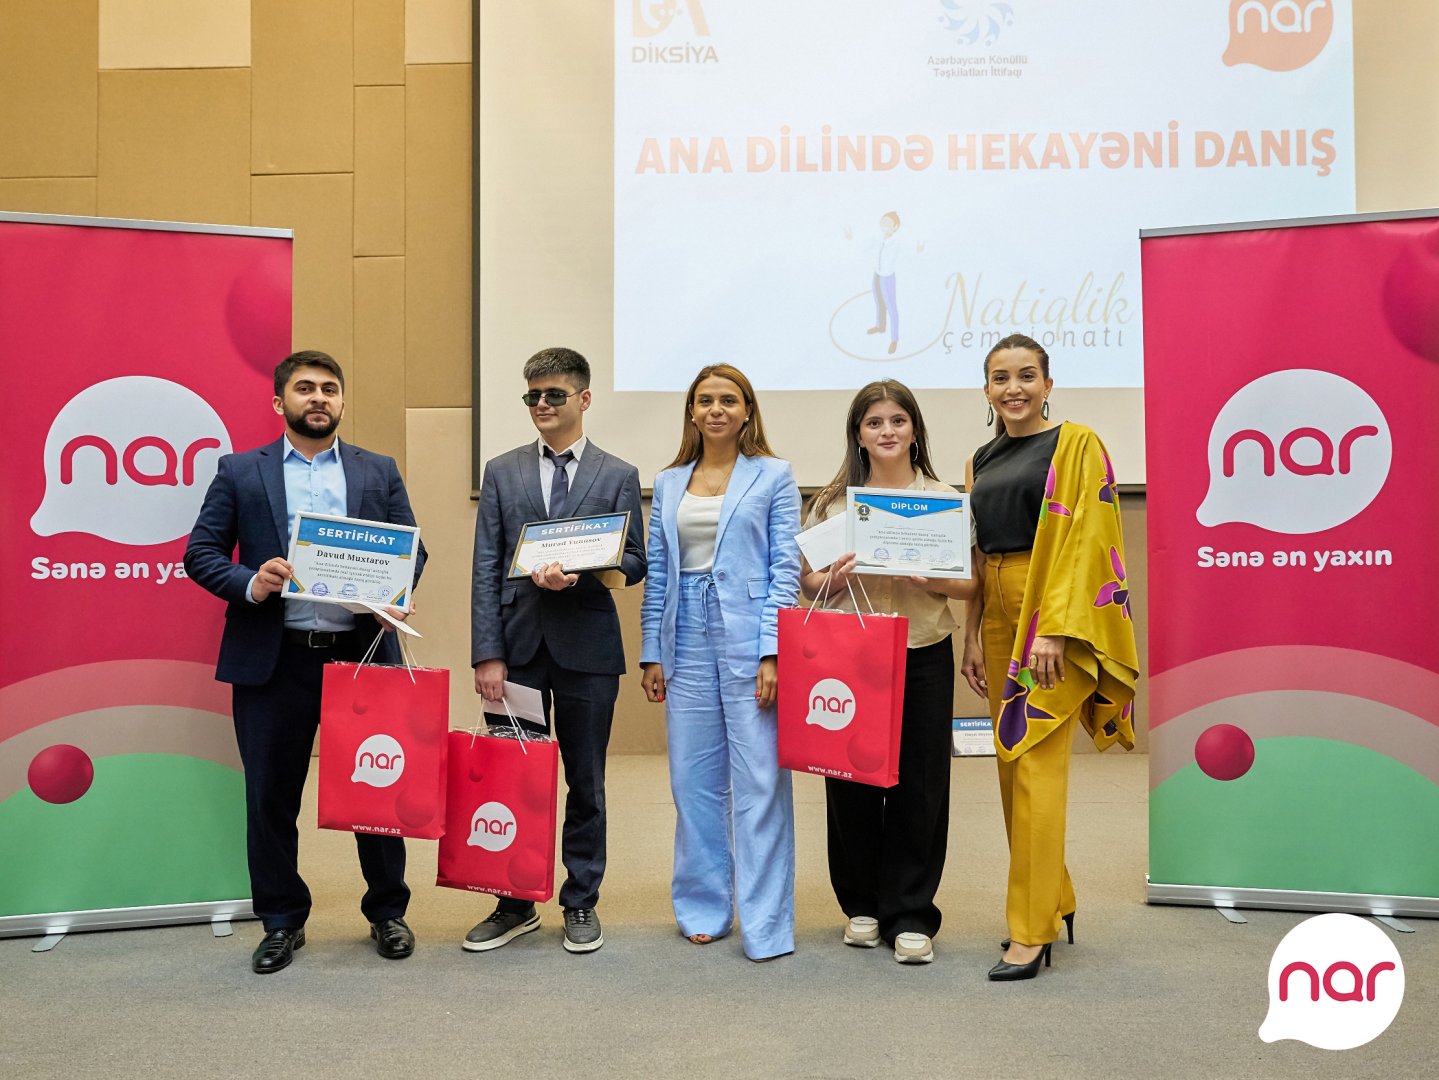 При поддержке Nar в День азербайджанского алфавита и языка прошло награждение победителей чемпионата по ораторскому искусству